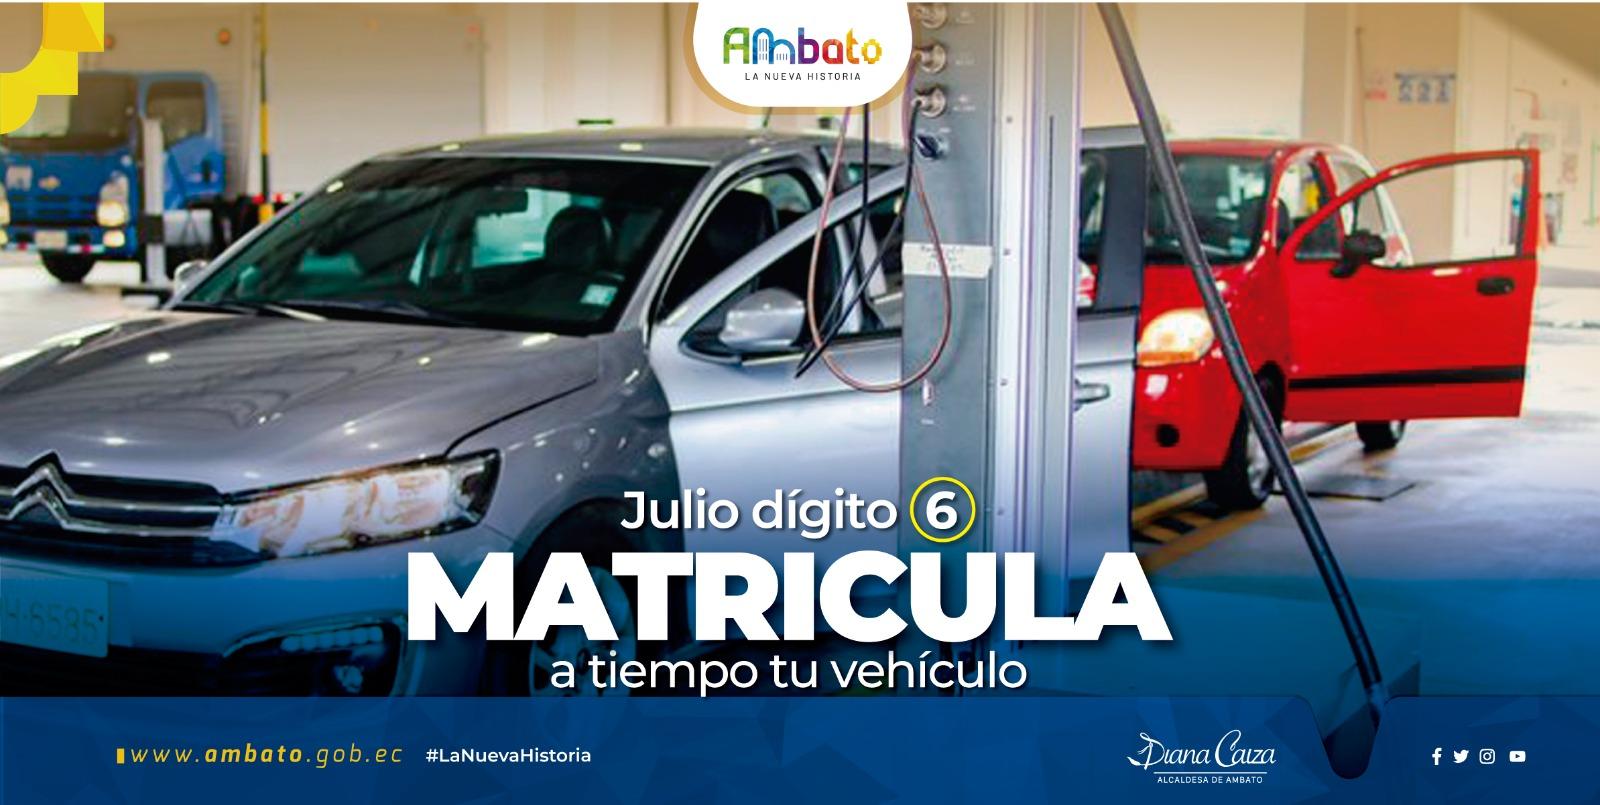 Matriculación vehicular Ambato digito 6 julio